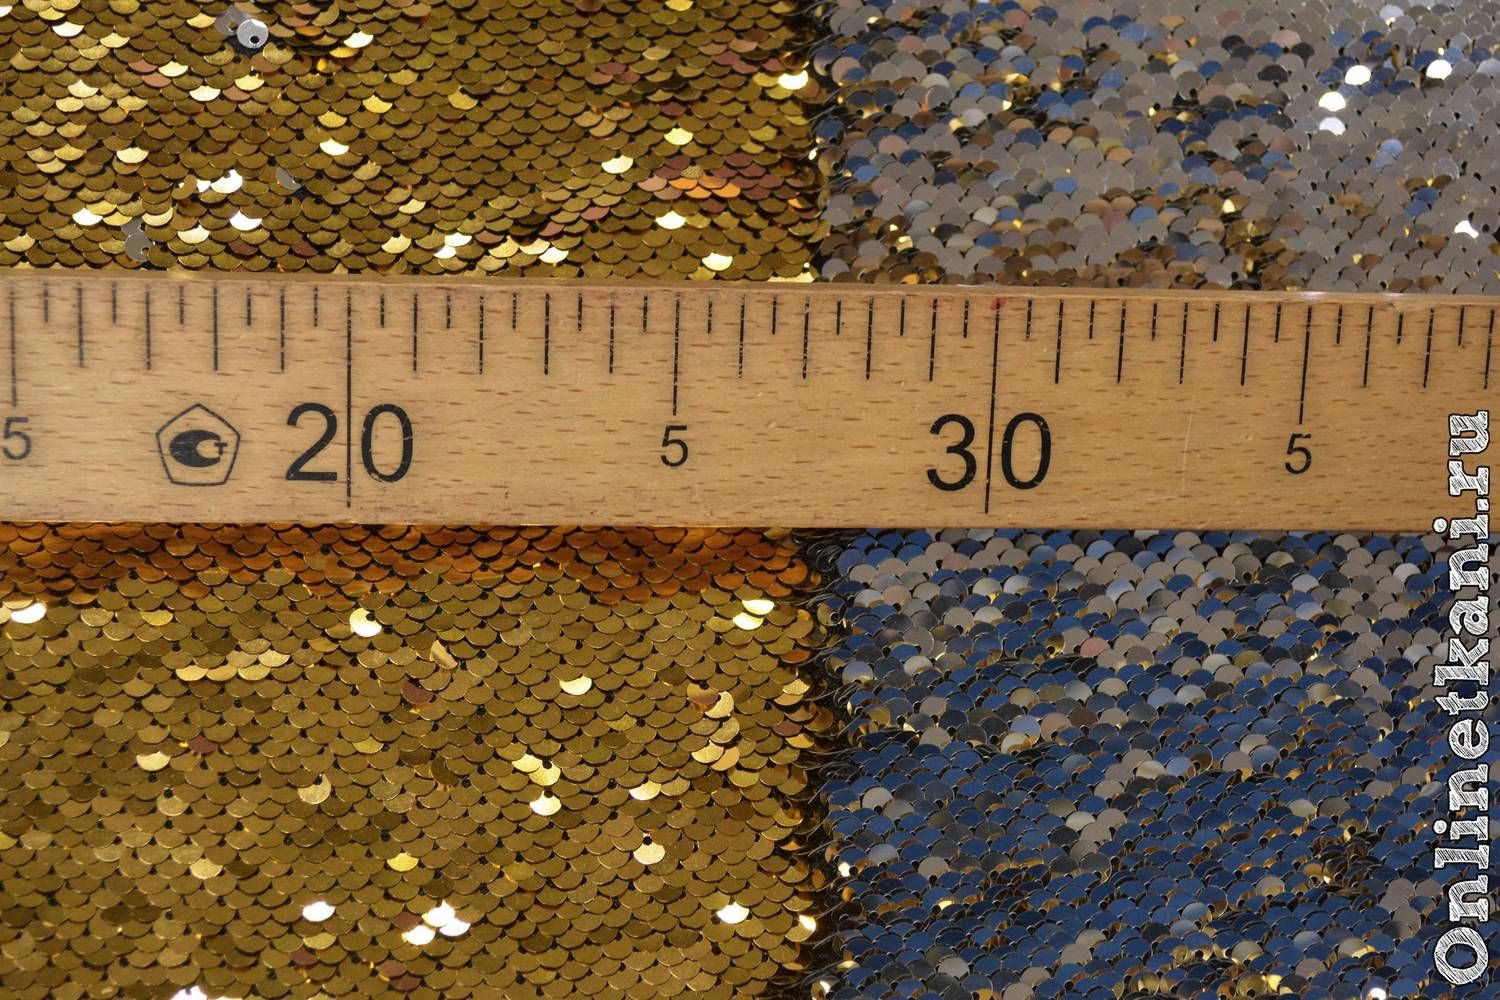 Ткань Пайетки двухсторонние Золото-Серебро разноцветный производитель  Китай артикул 0003 купить оптом и в розницу